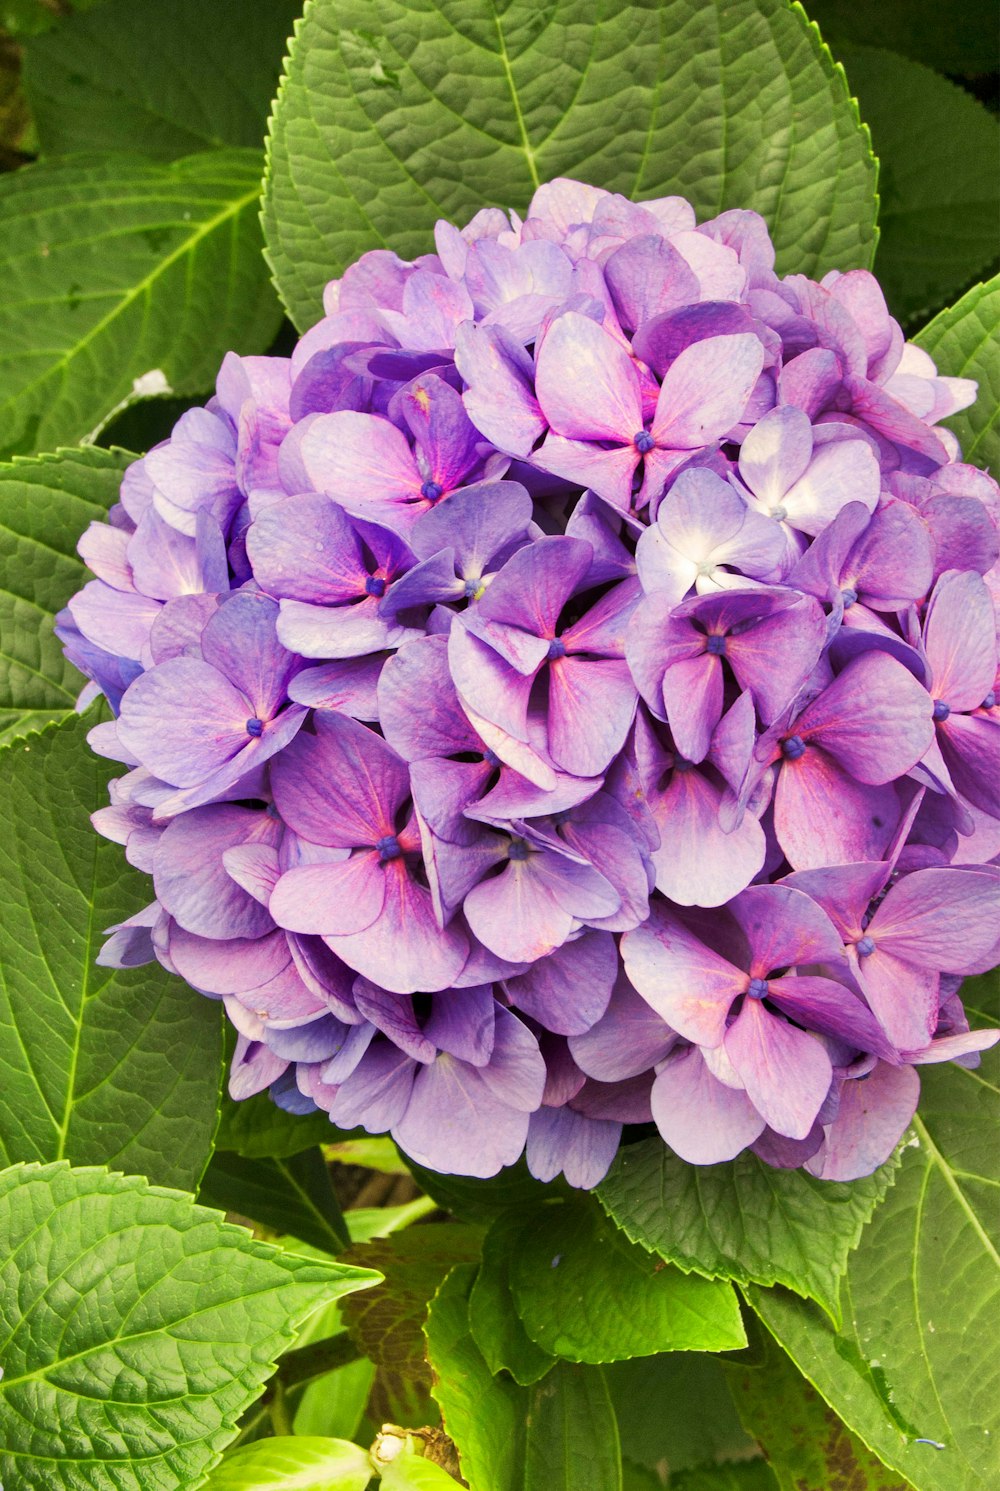 purple hydrangeas flower in closeup photo